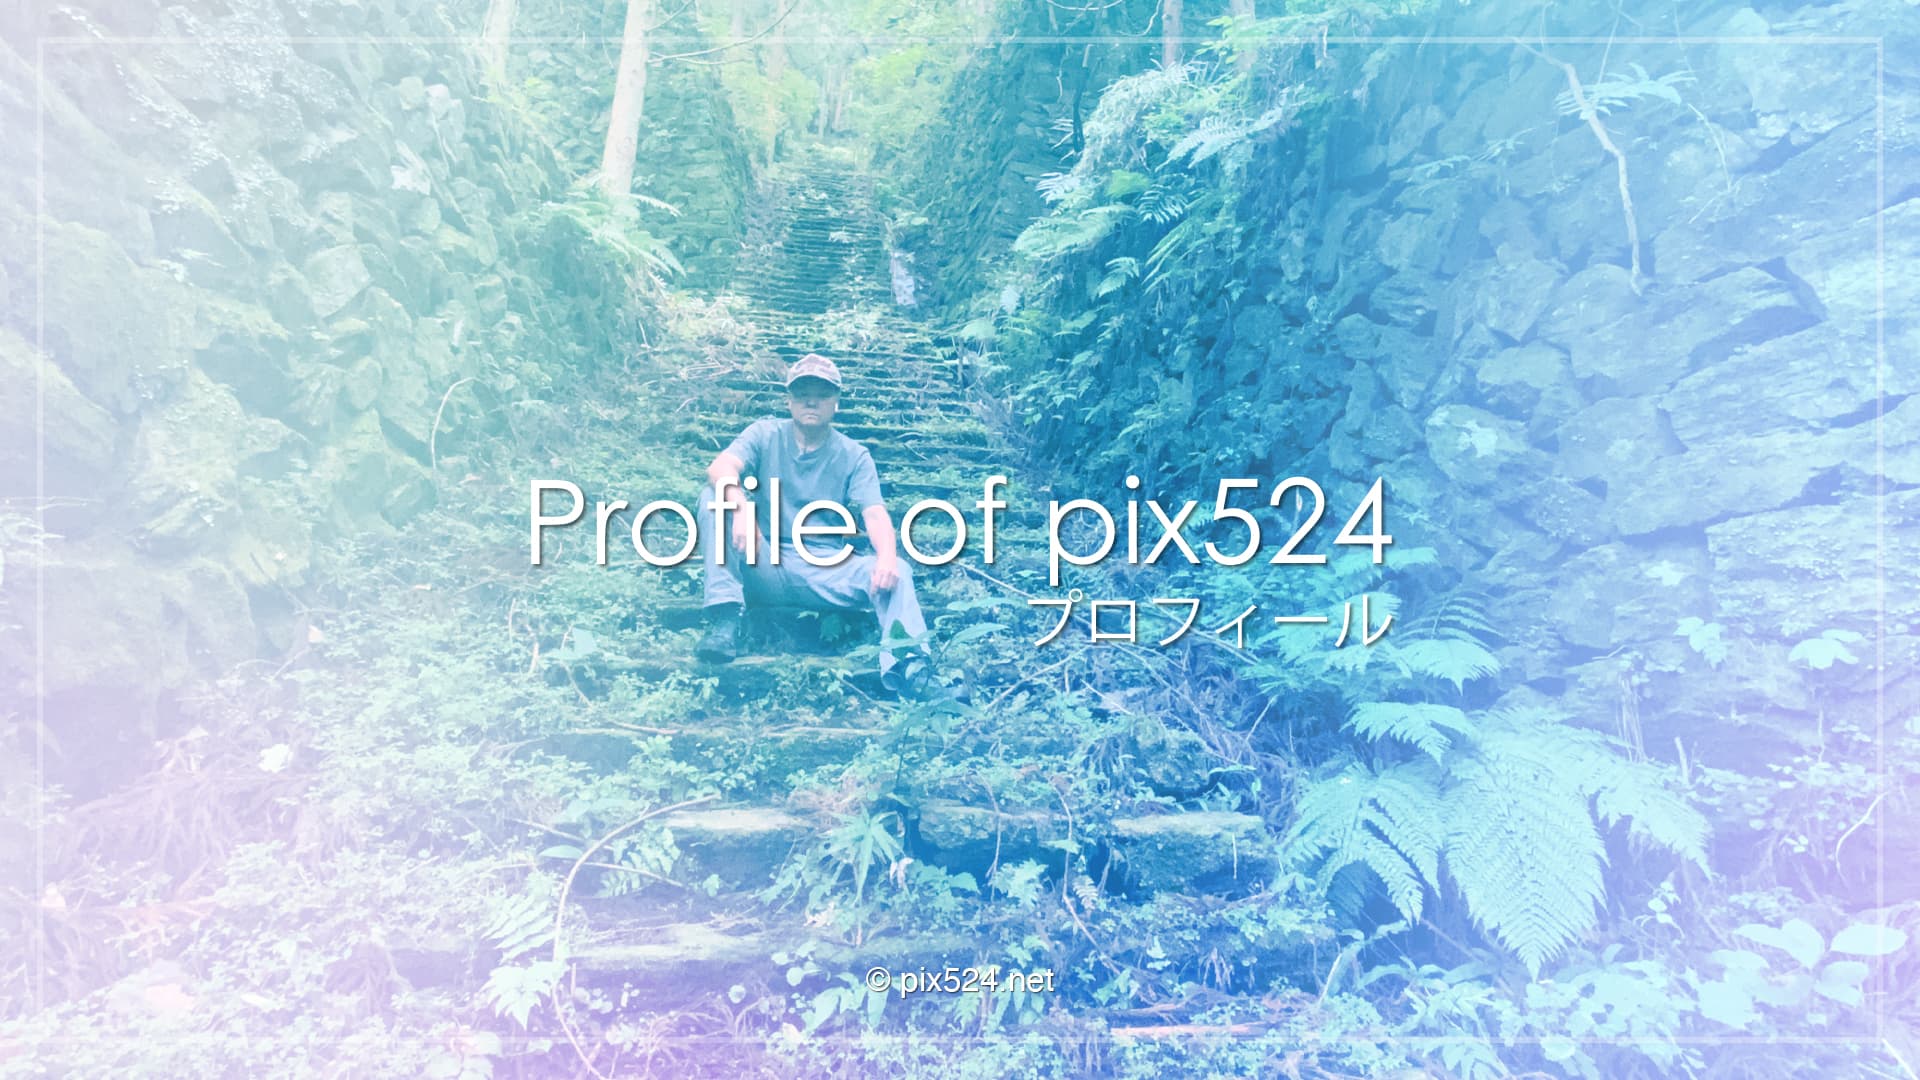 Profile of pix524 Designer Masaya Konishi  小西雅哉（こにし まさや））